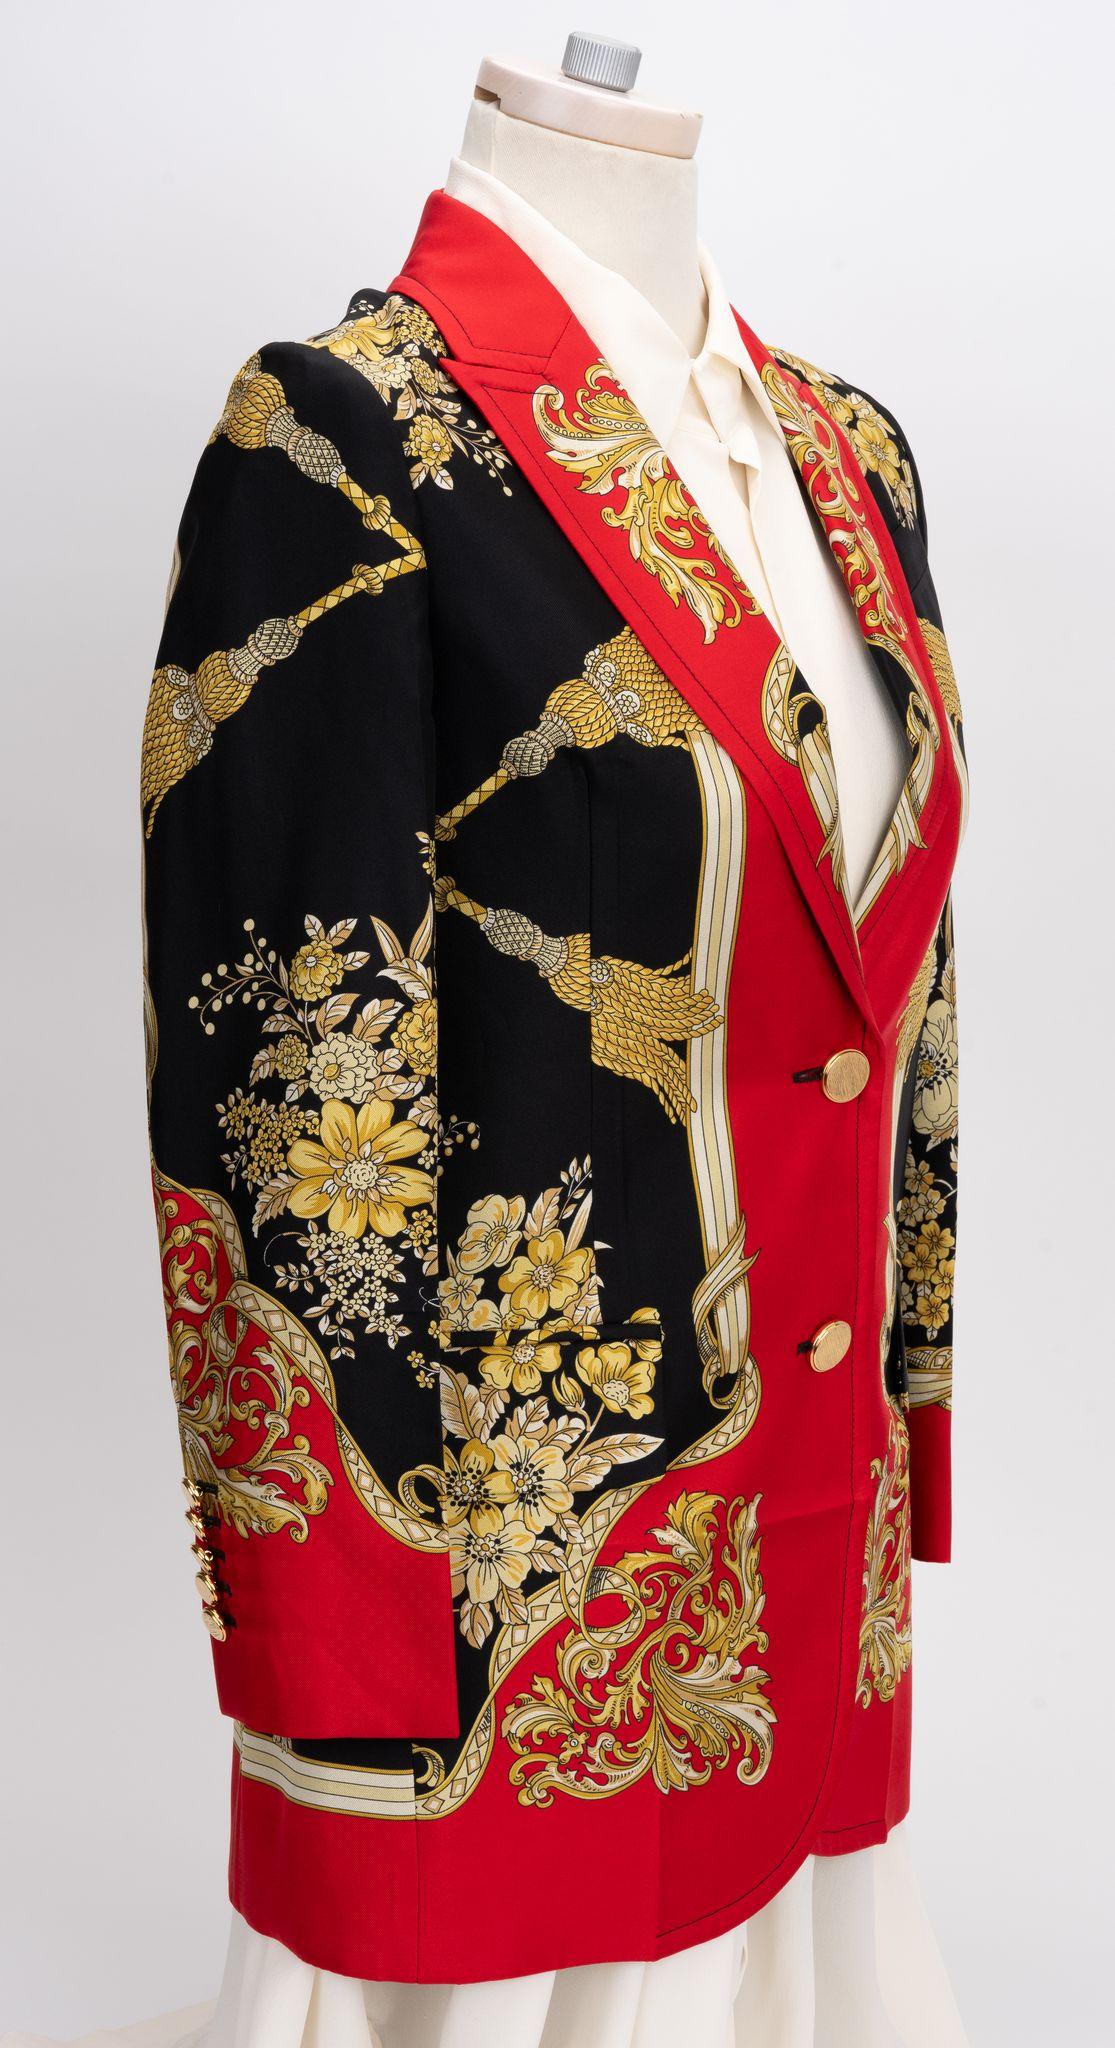 Gucci brand new Floral Tassel Foulard Baroque blazer with peak lapels. Fermé par des boutons, il comporte deux poches à rabat et une pochette sur le devant, ainsi qu'une fente d'aération au dos.
Taille italienne 36.
Mesures : épaule 15.5